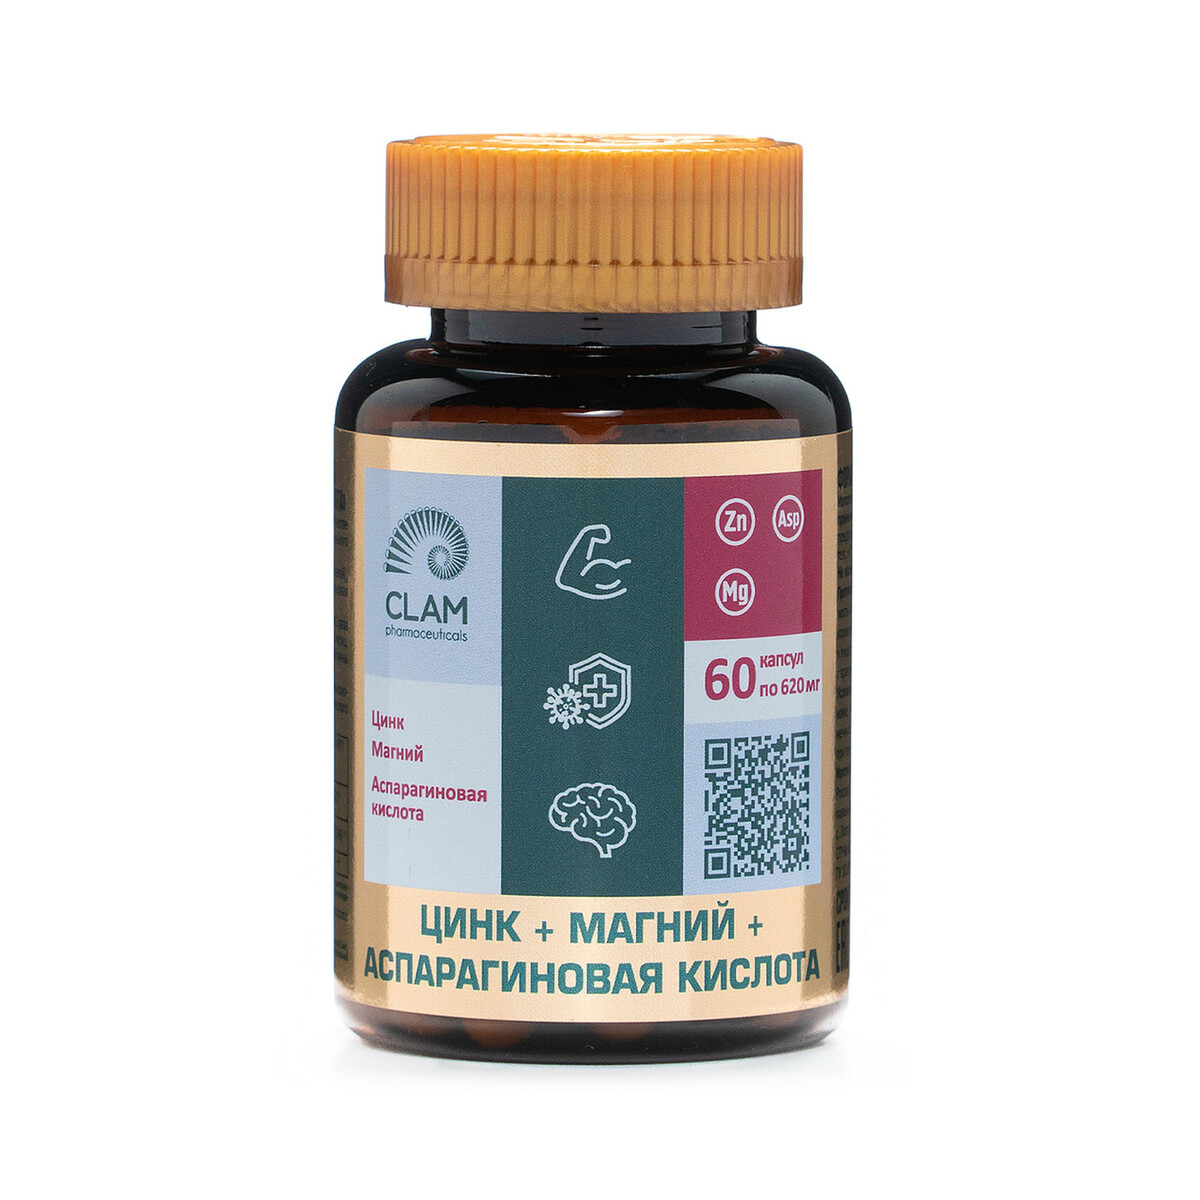 Цинк+магний+аспарагиновая кислота-anti age, источник витаминов и минералов - для наращ-ия мышечной массы - 60 капсул